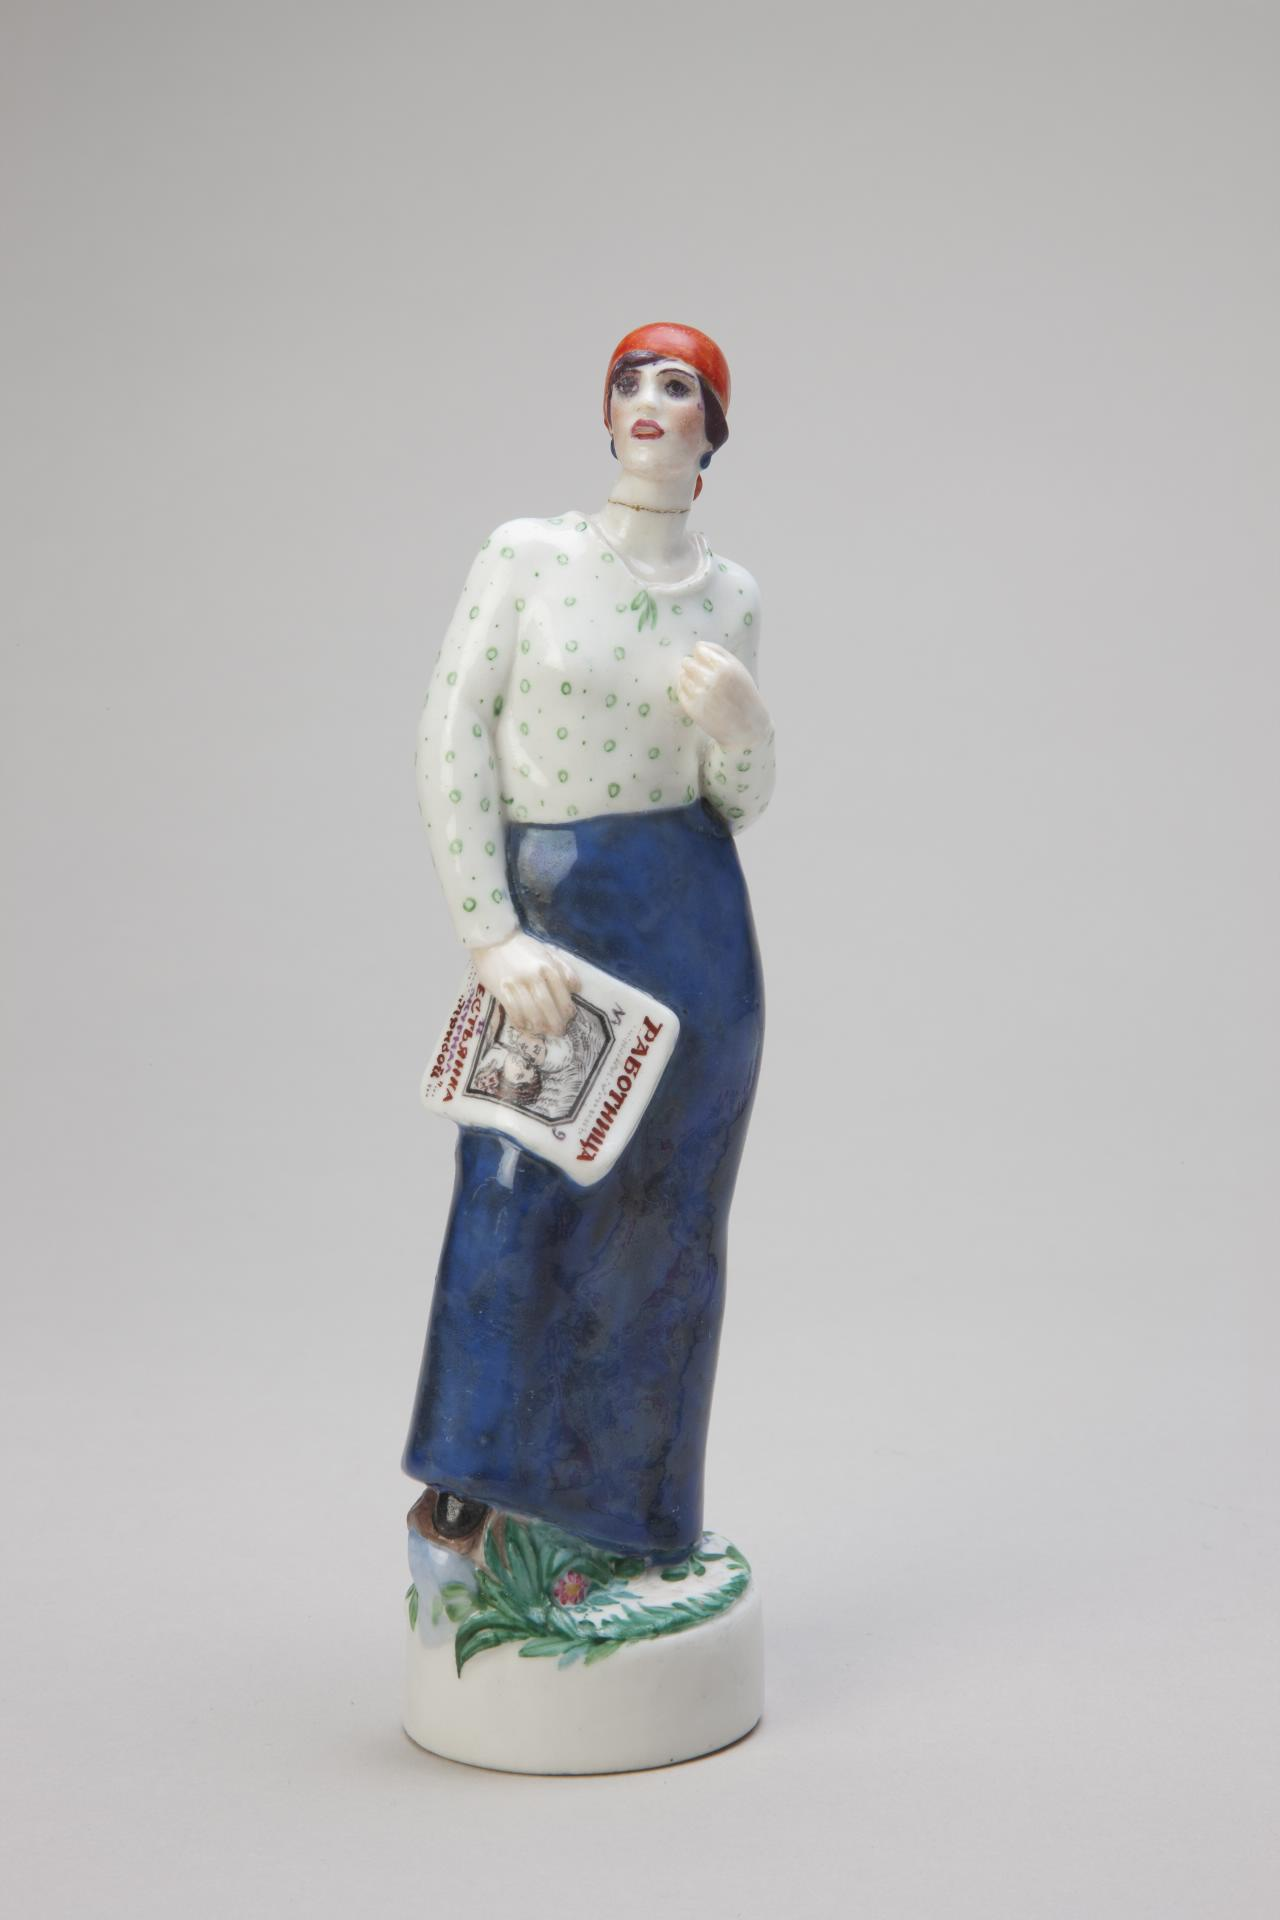 Скульптура «Работница». Автор модели: Данько Наталия Яковлевна, автор росписи: Данько Елена Яковлевна, 1924 год